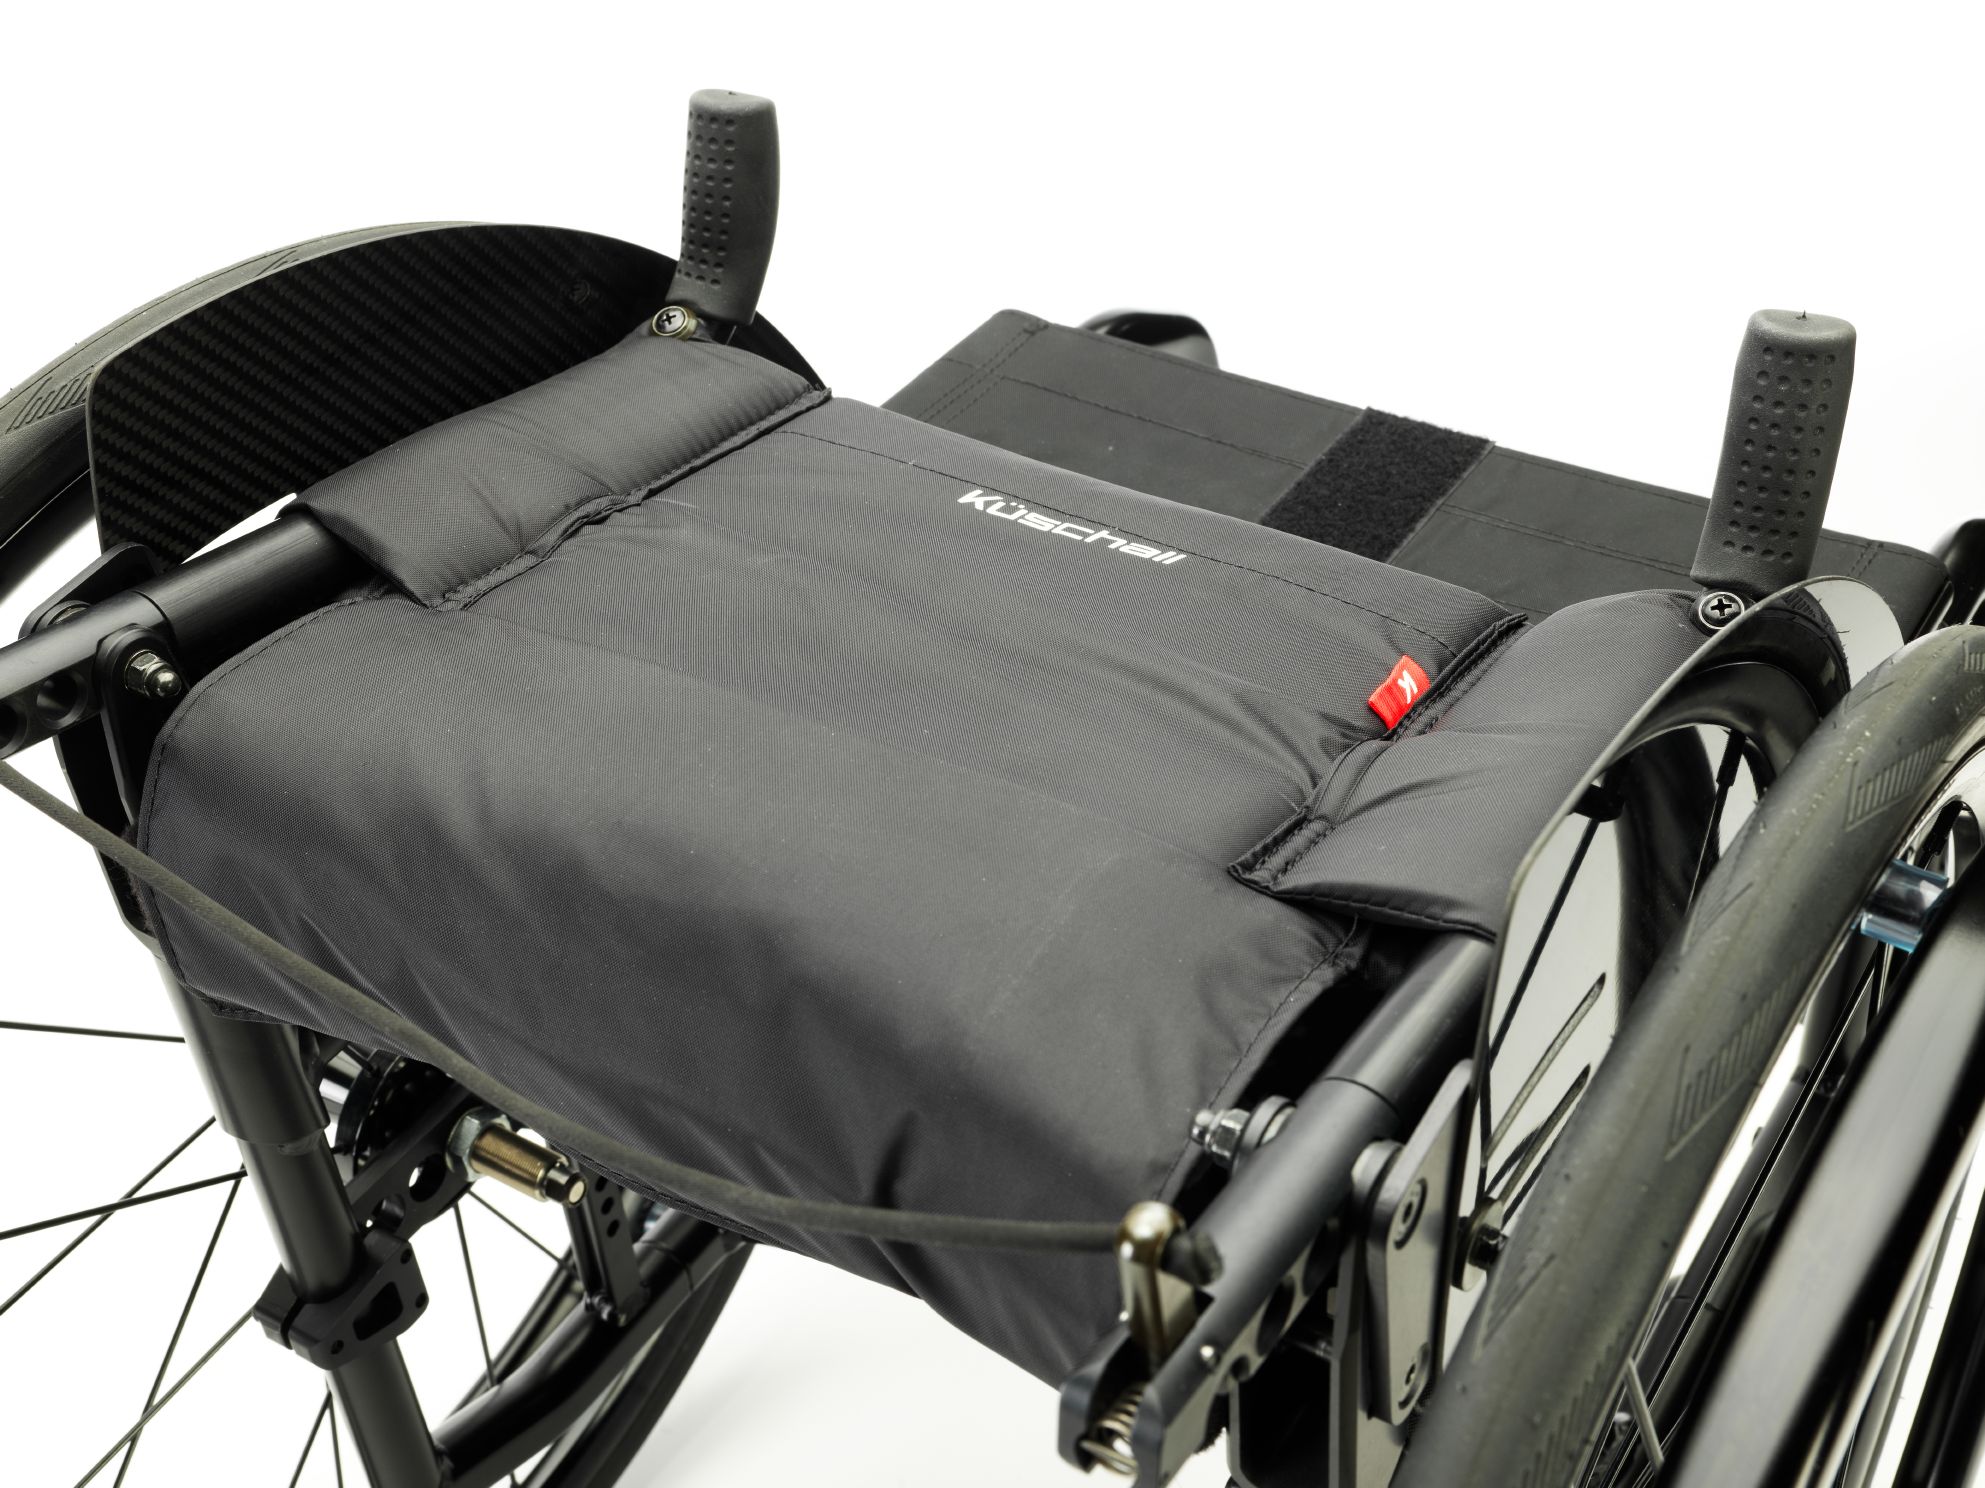 Активне крісло колісне підвищеної надійності та функціональності Compact